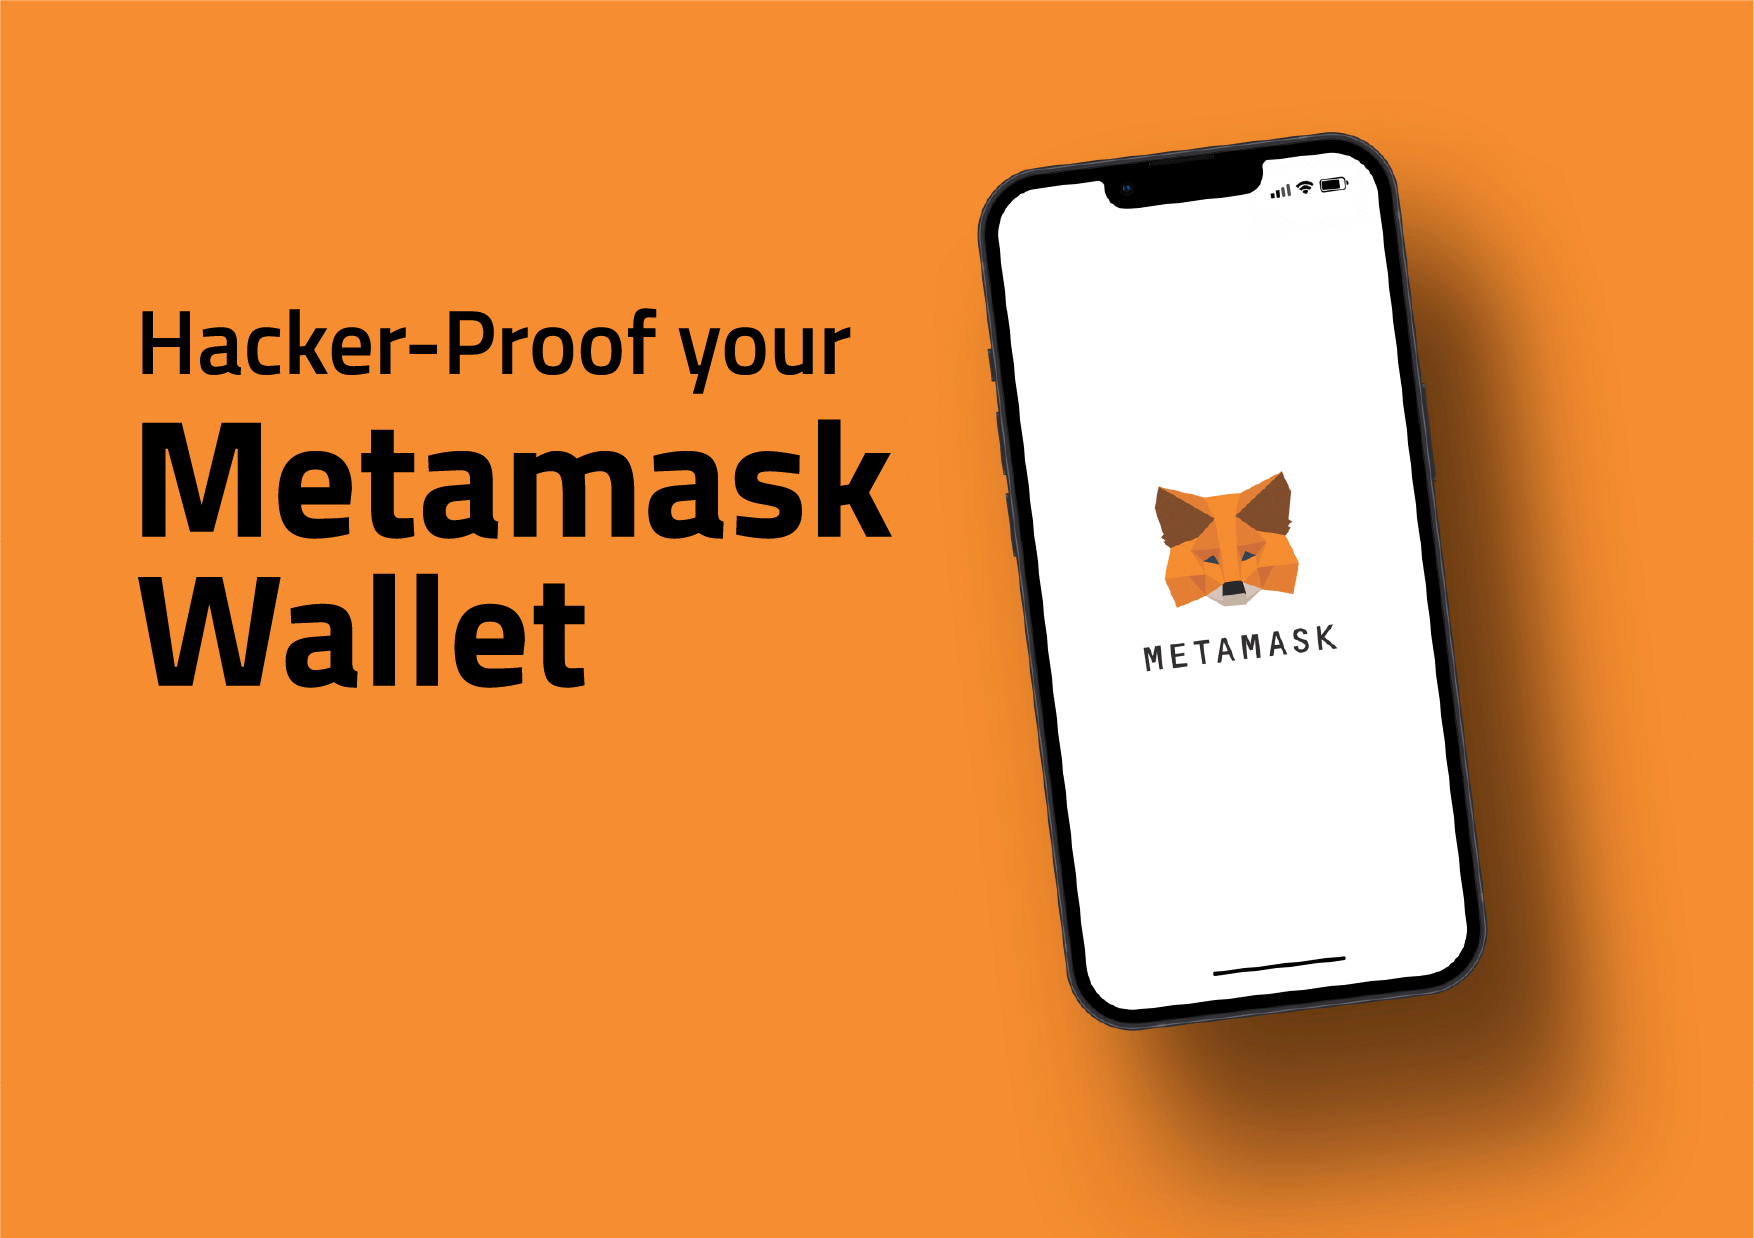 How to Hacker-Proof Your MetaMask Wallet